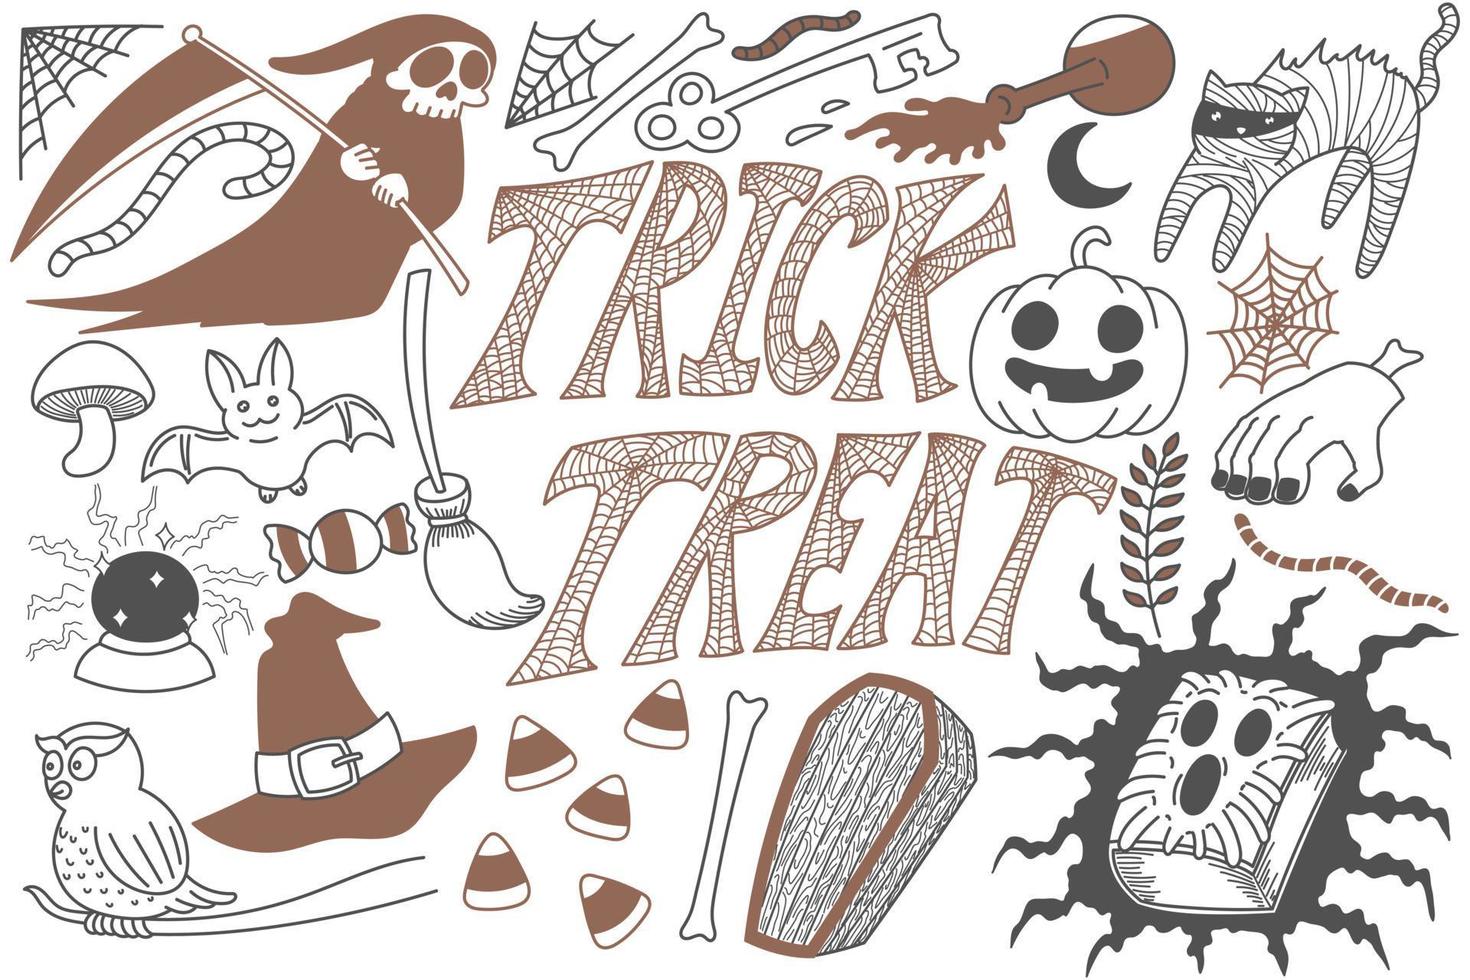 trick or treat halloween doodles kunst vector